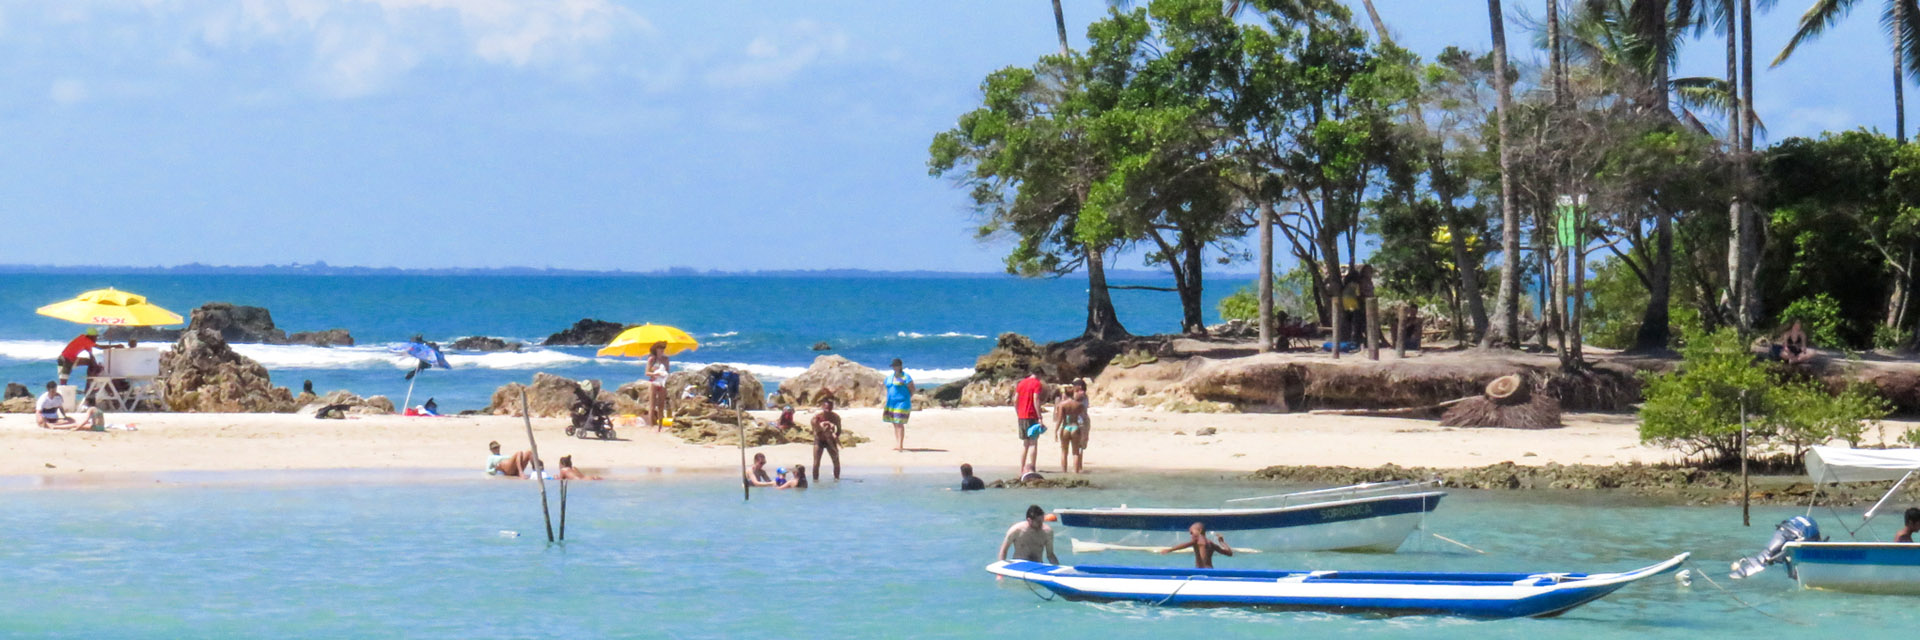 Guia de praias Costa do Dendê e do Cacau